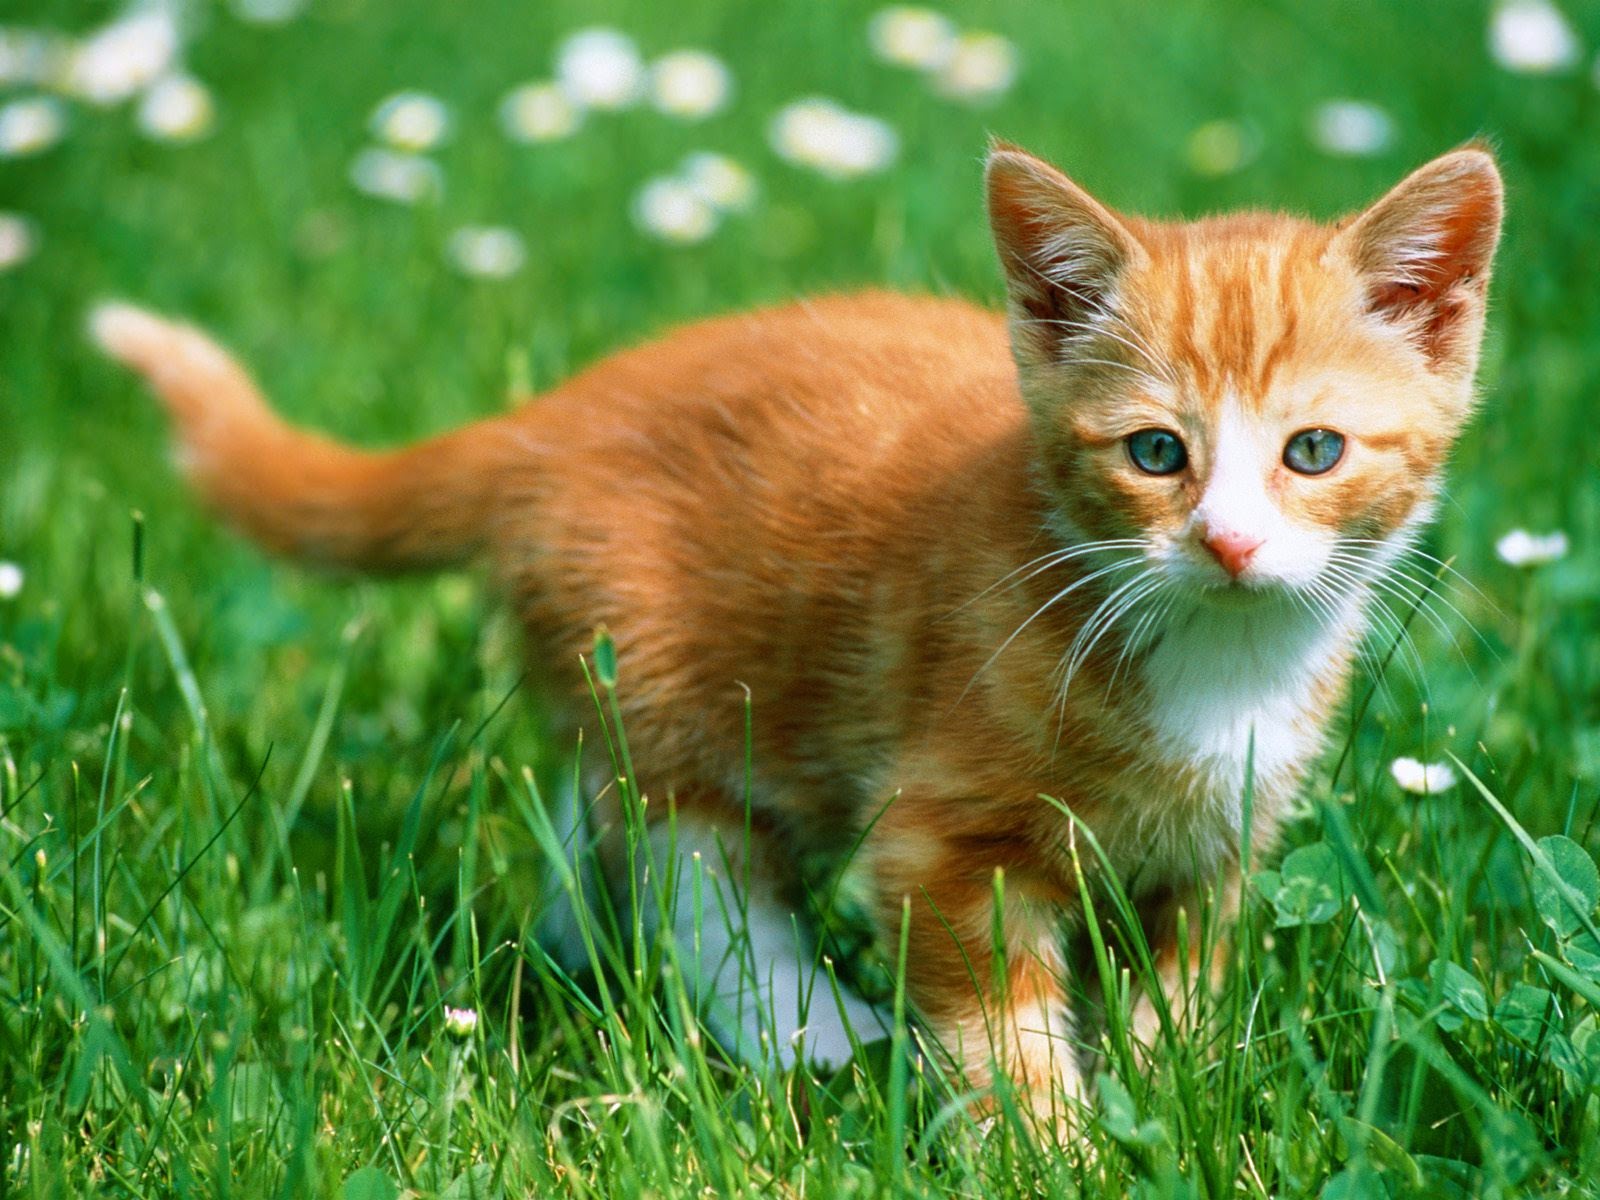 Kucing Cat Lucu Wallpapers Hd Free Wallpaper Gambar Anak Full